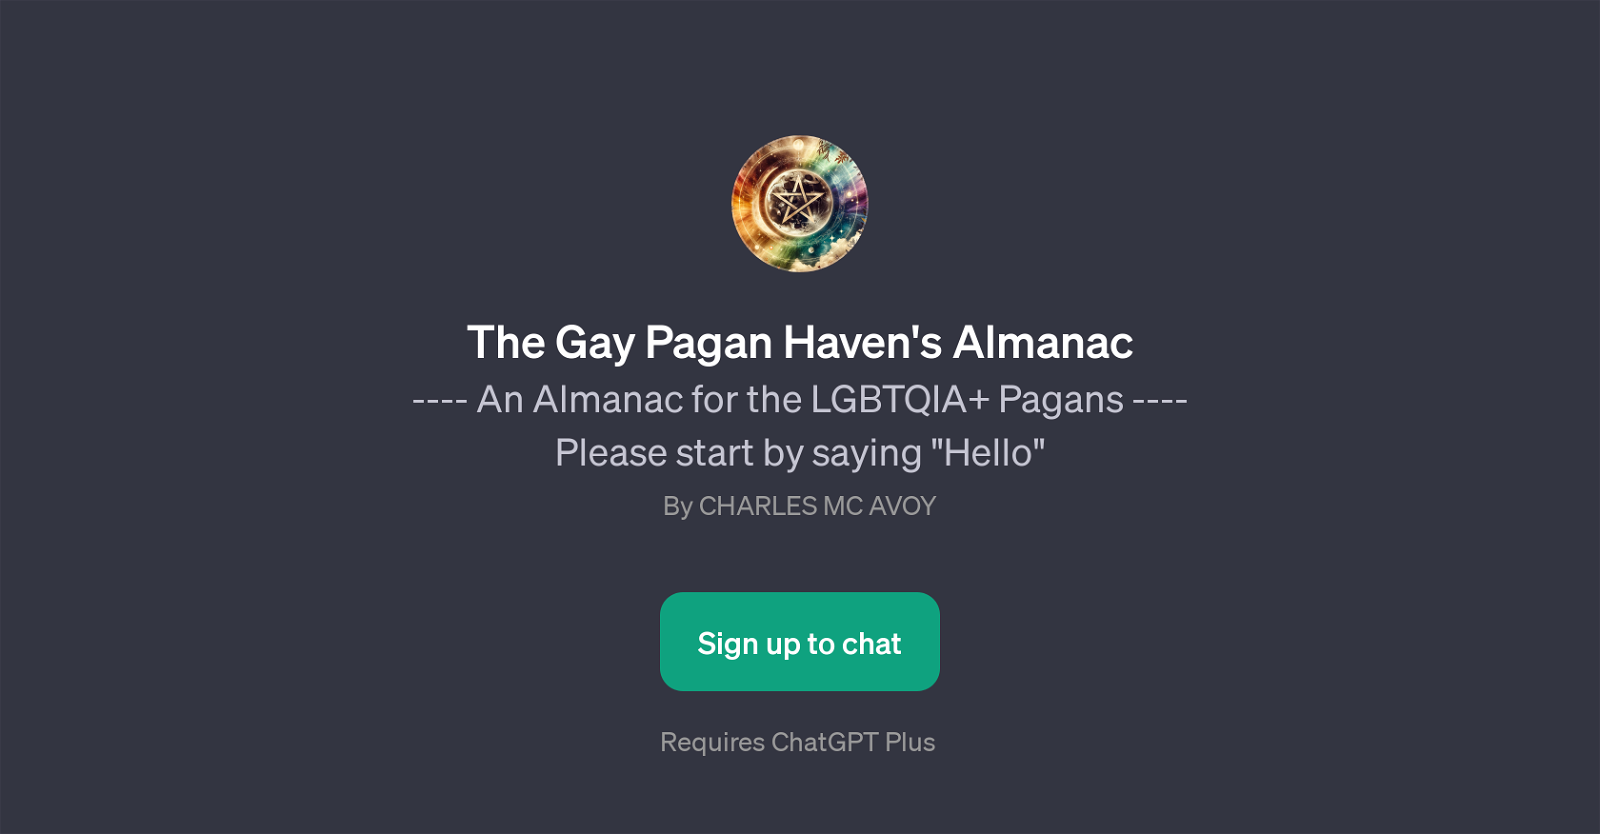 The Gay Pagan Haven's Almanac website